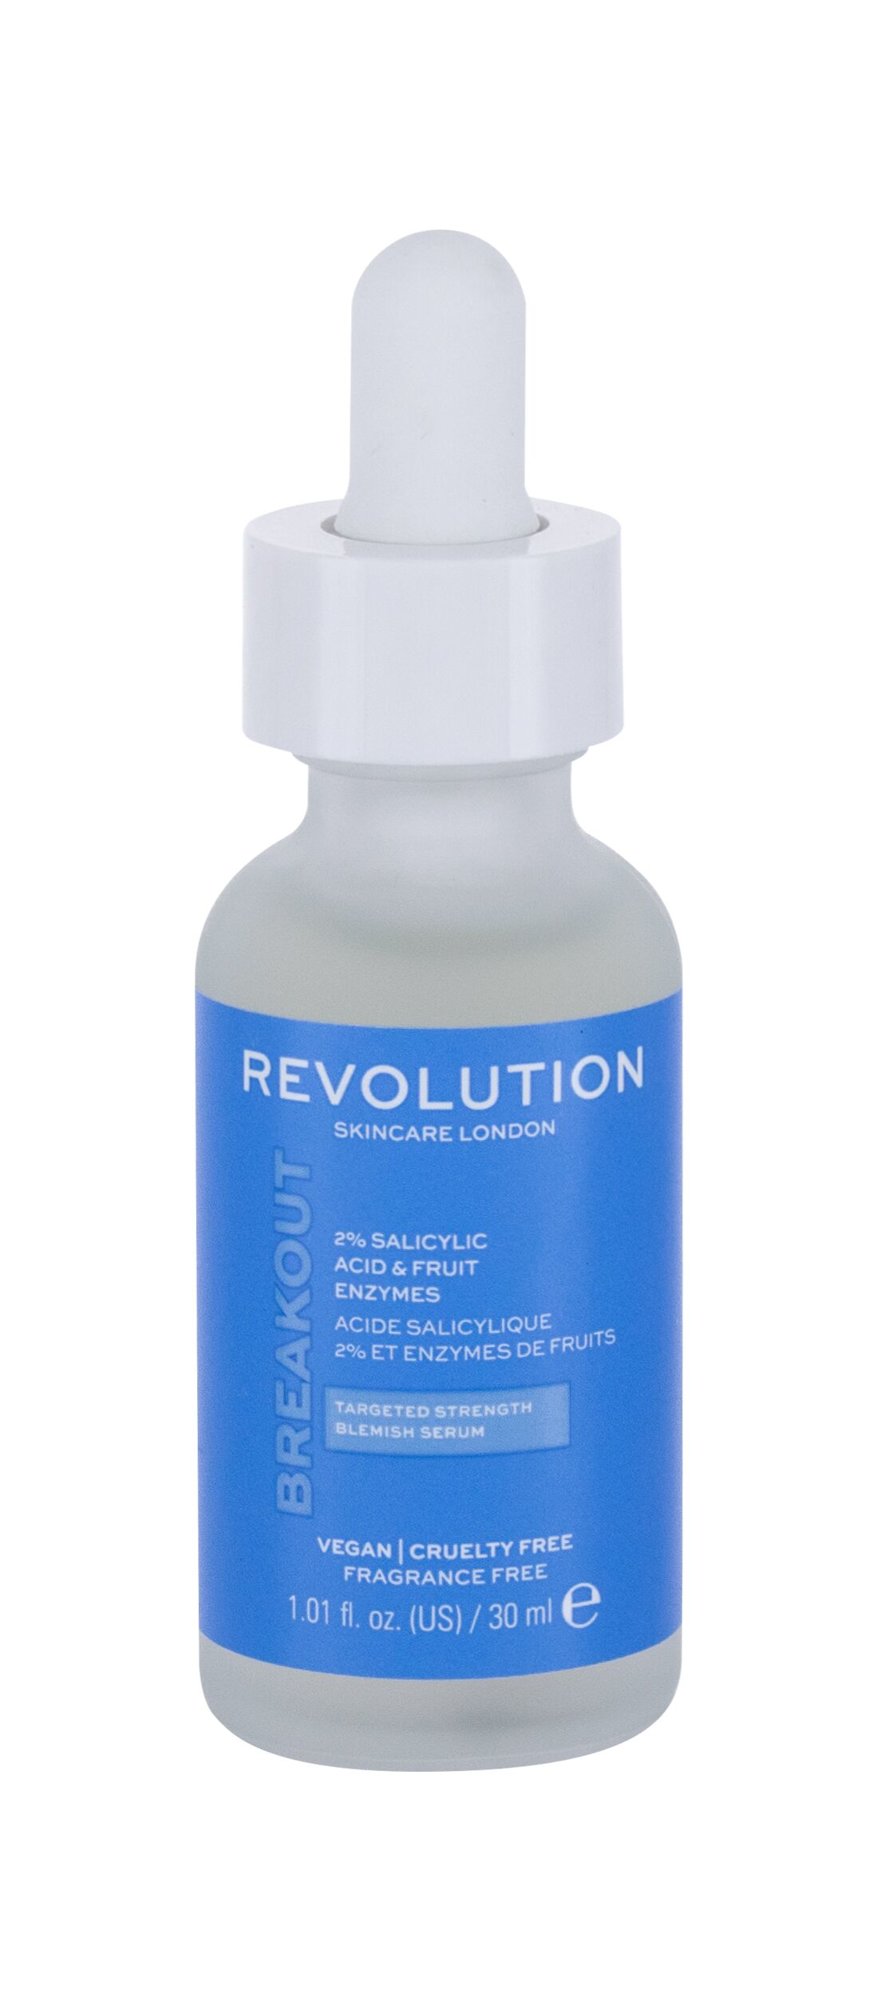 Revolution Skincare Skincare 2% Salicylic Acid 30ml Veido serumas